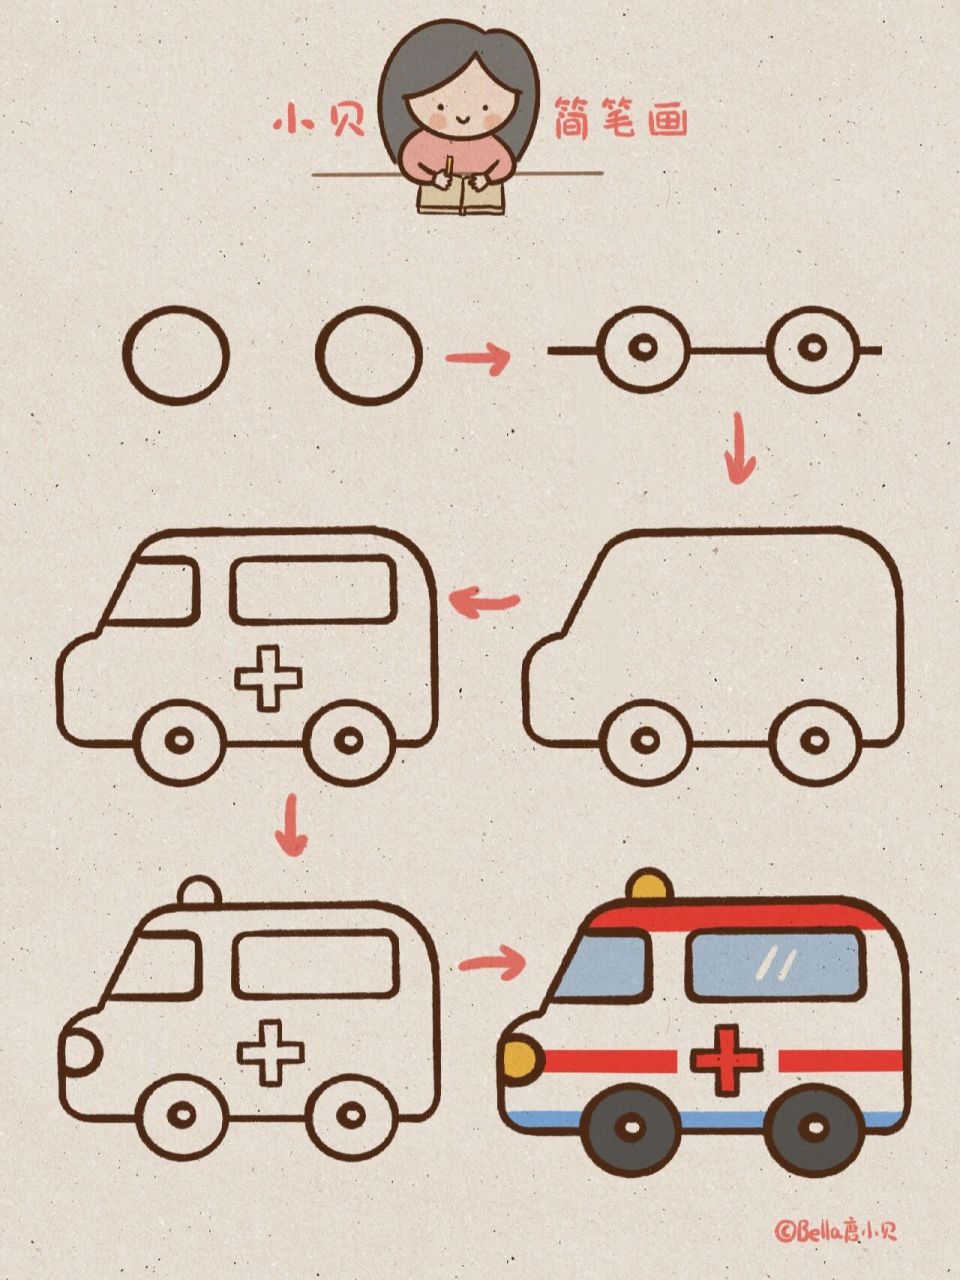 救护车简笔画 简单图片